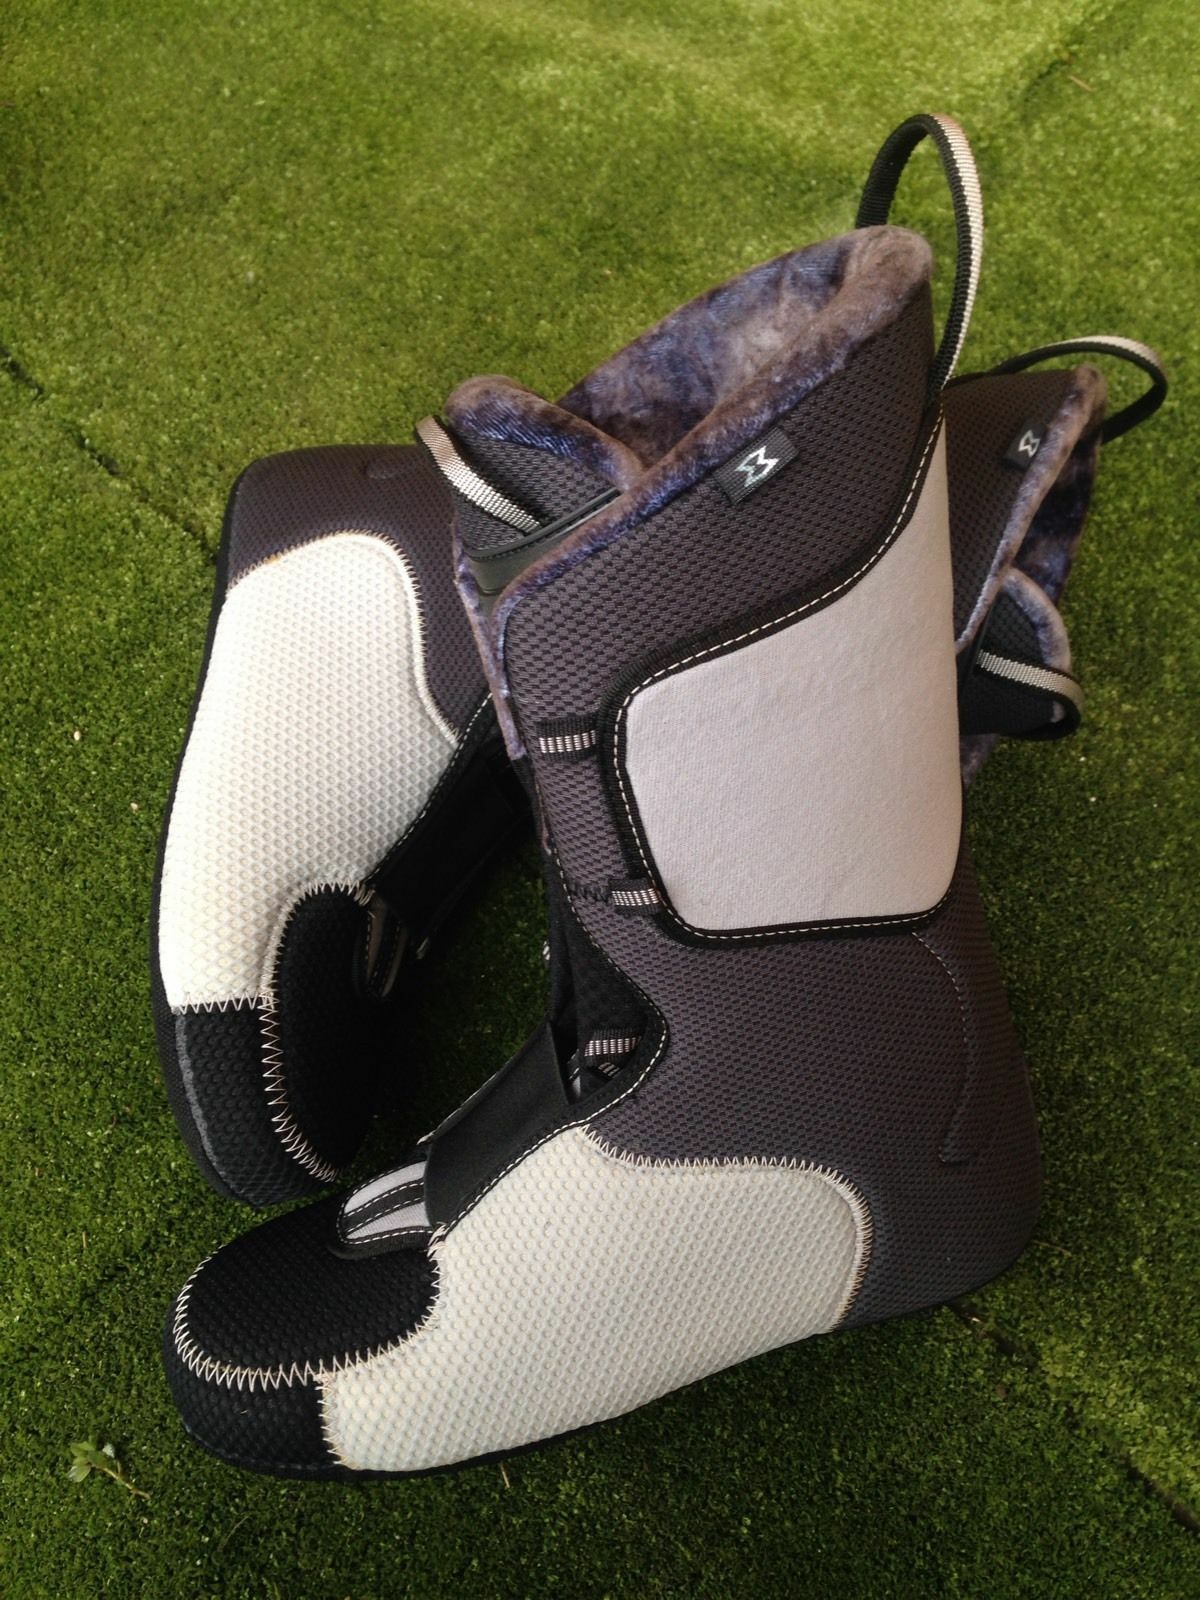 Scarpette interne per scarponi da sci 100% thermo fit ski liners boots snowboard